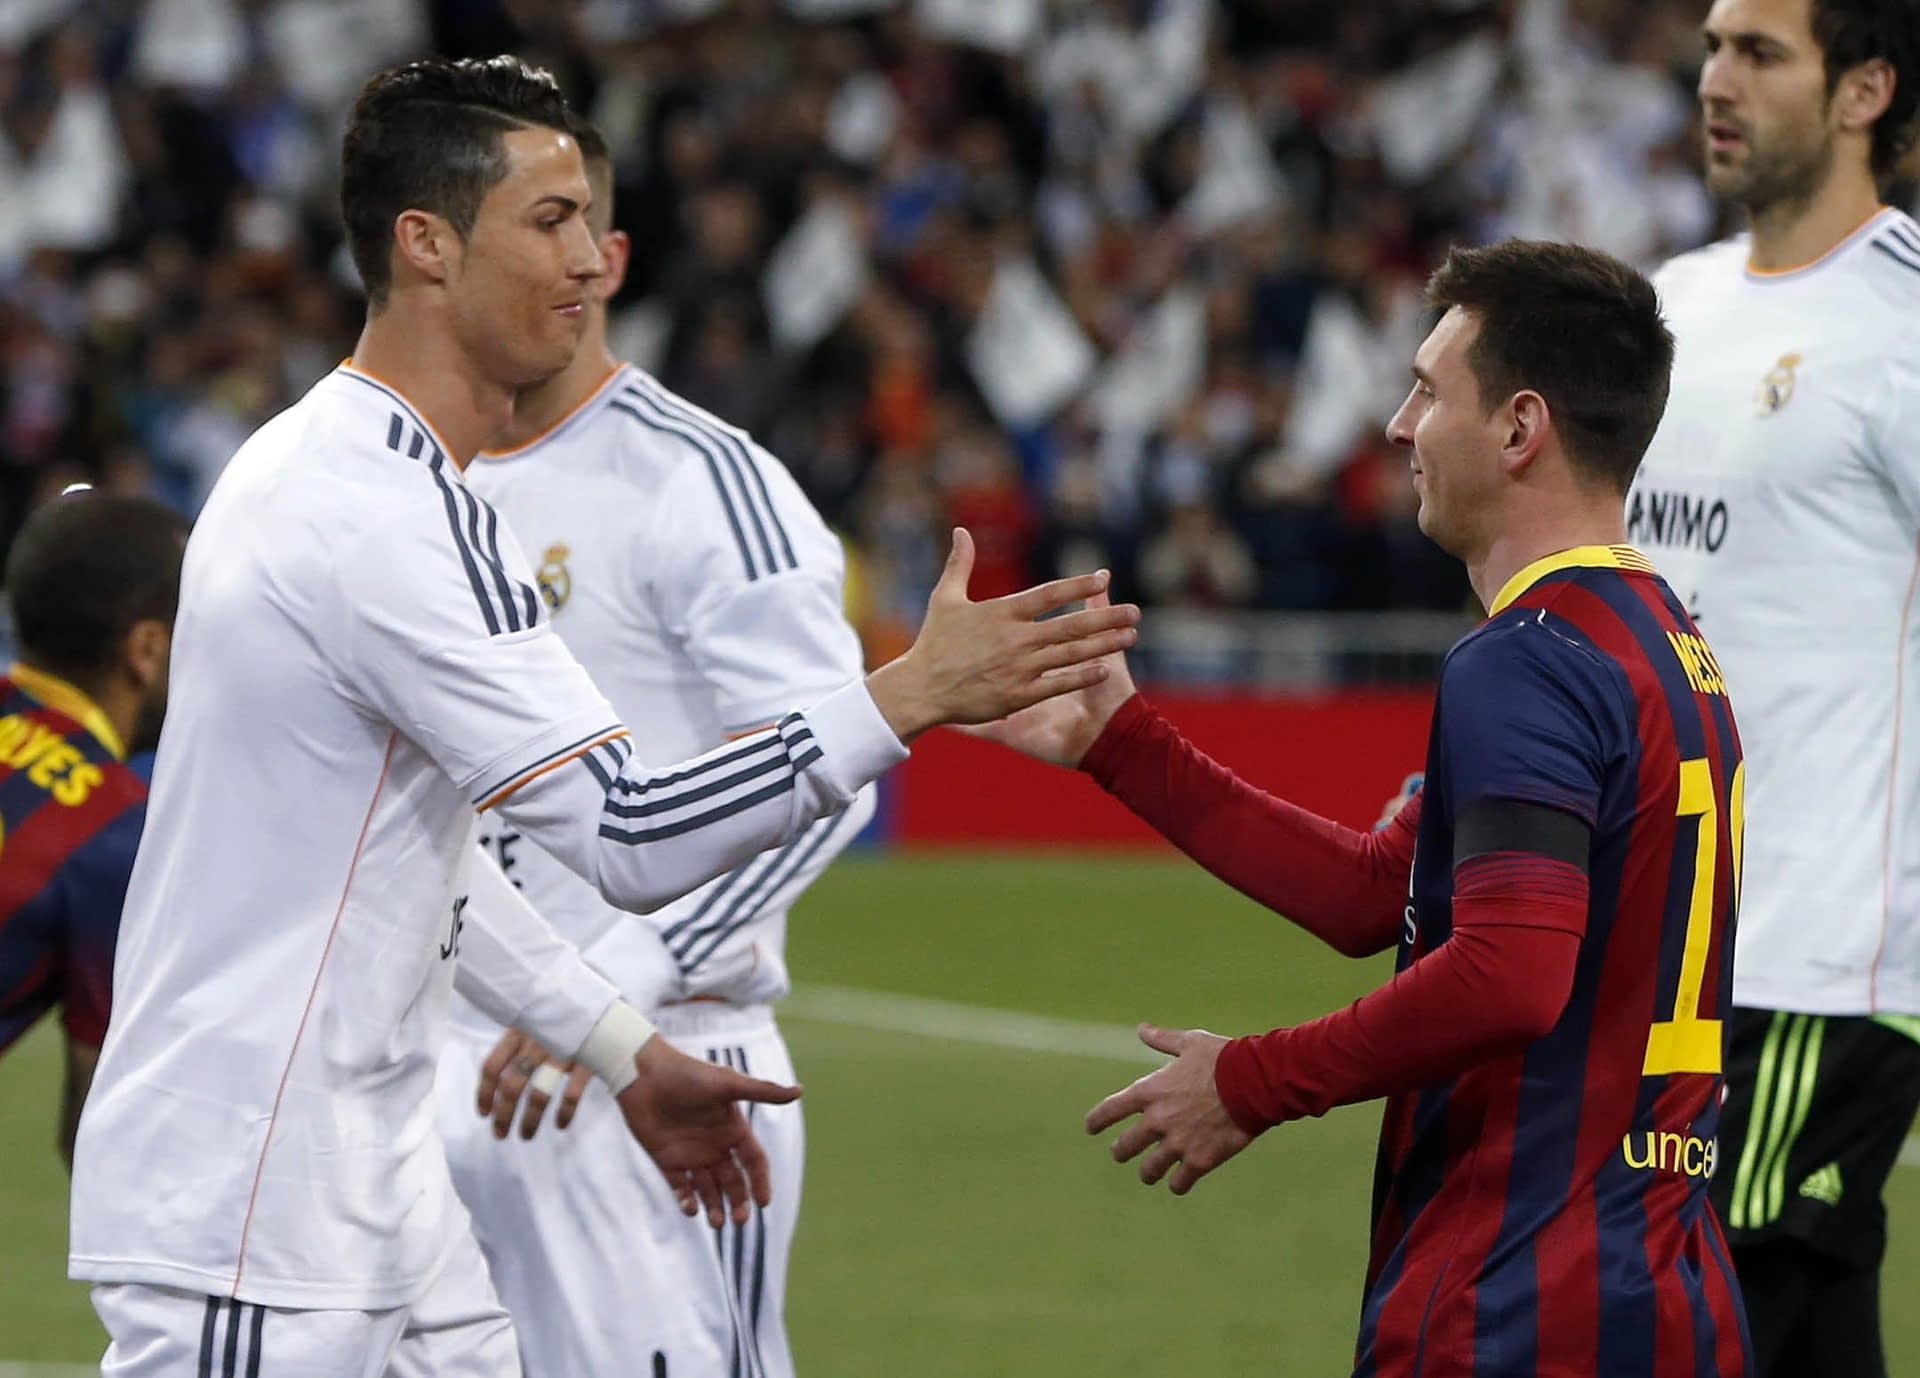 Cristiano Ronaldo Dominates Over Messi and Barcelona, Leipzig Eliminates Manchester United